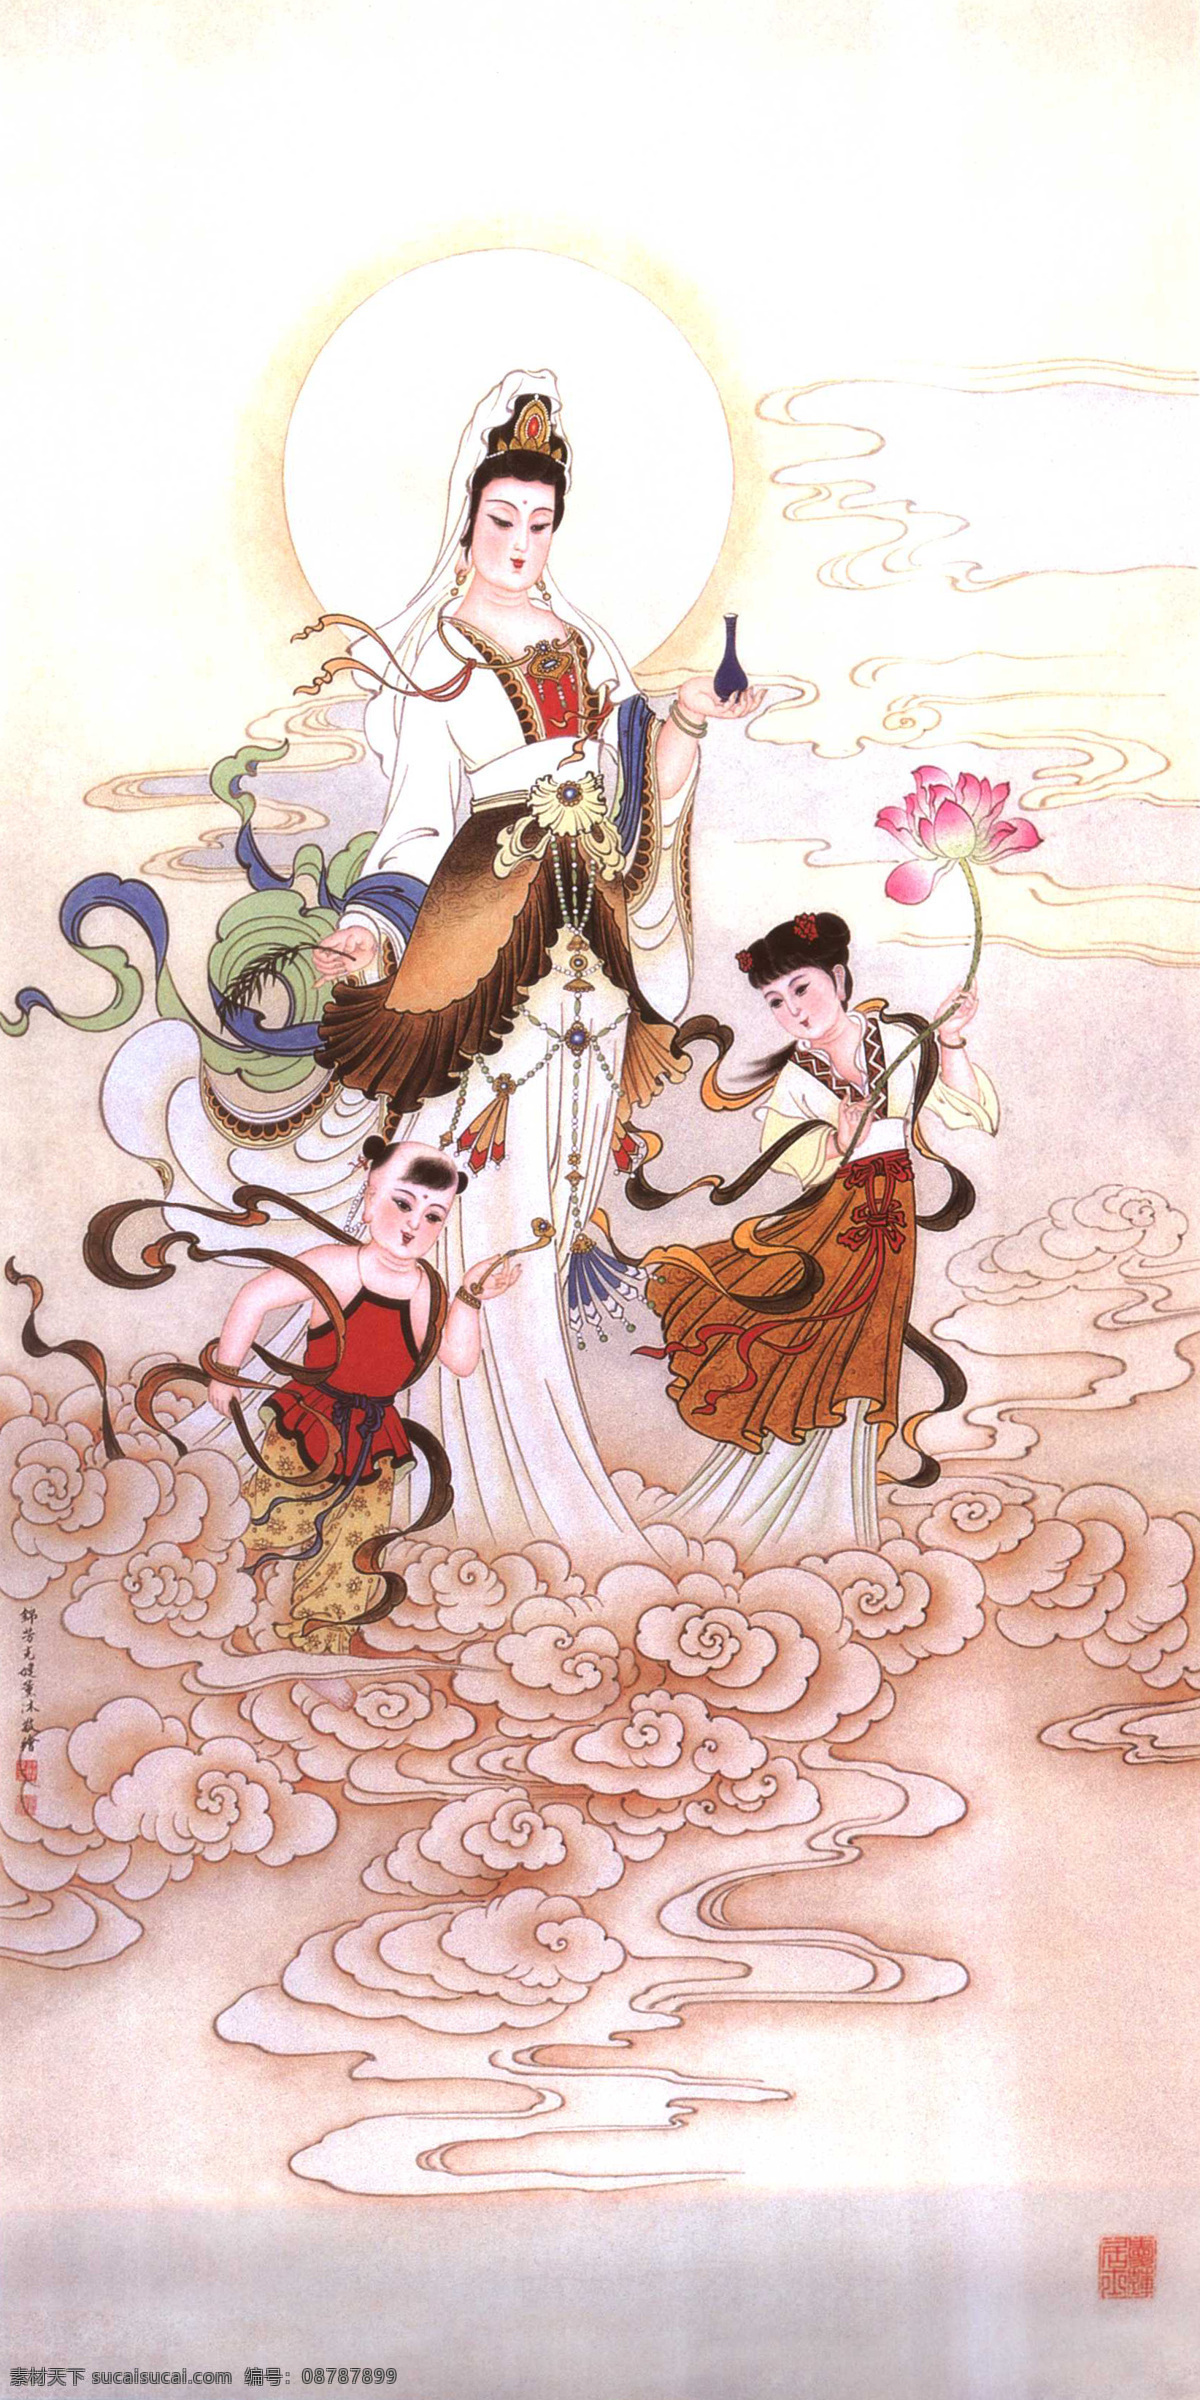 观音菩萨 佛教文化 人物 宗教 装饰画 万物 人物图库 生活人物